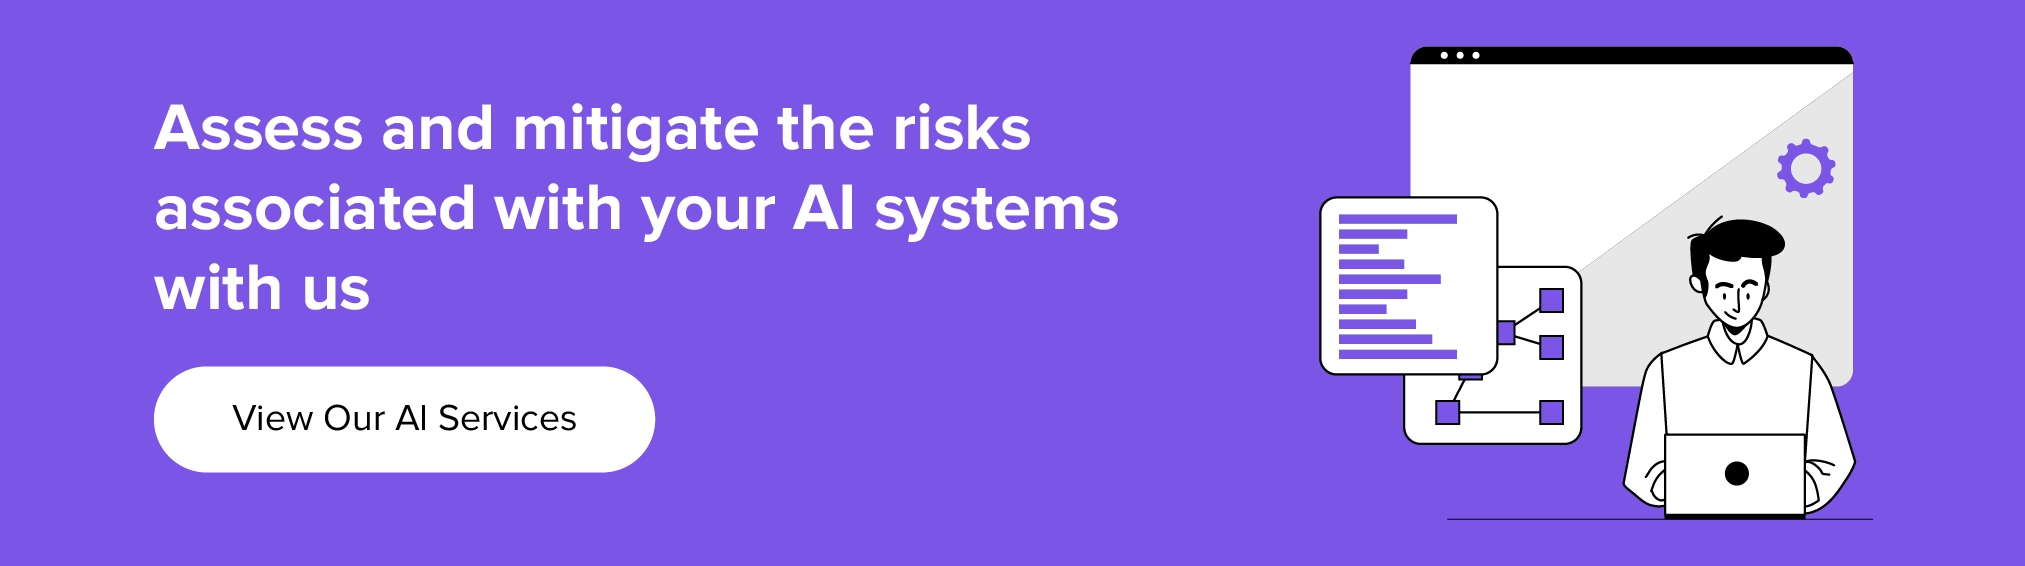 colaborați cu noi pentru a evalua și a atenua riscurile asociate cu sistemul dvs. AI